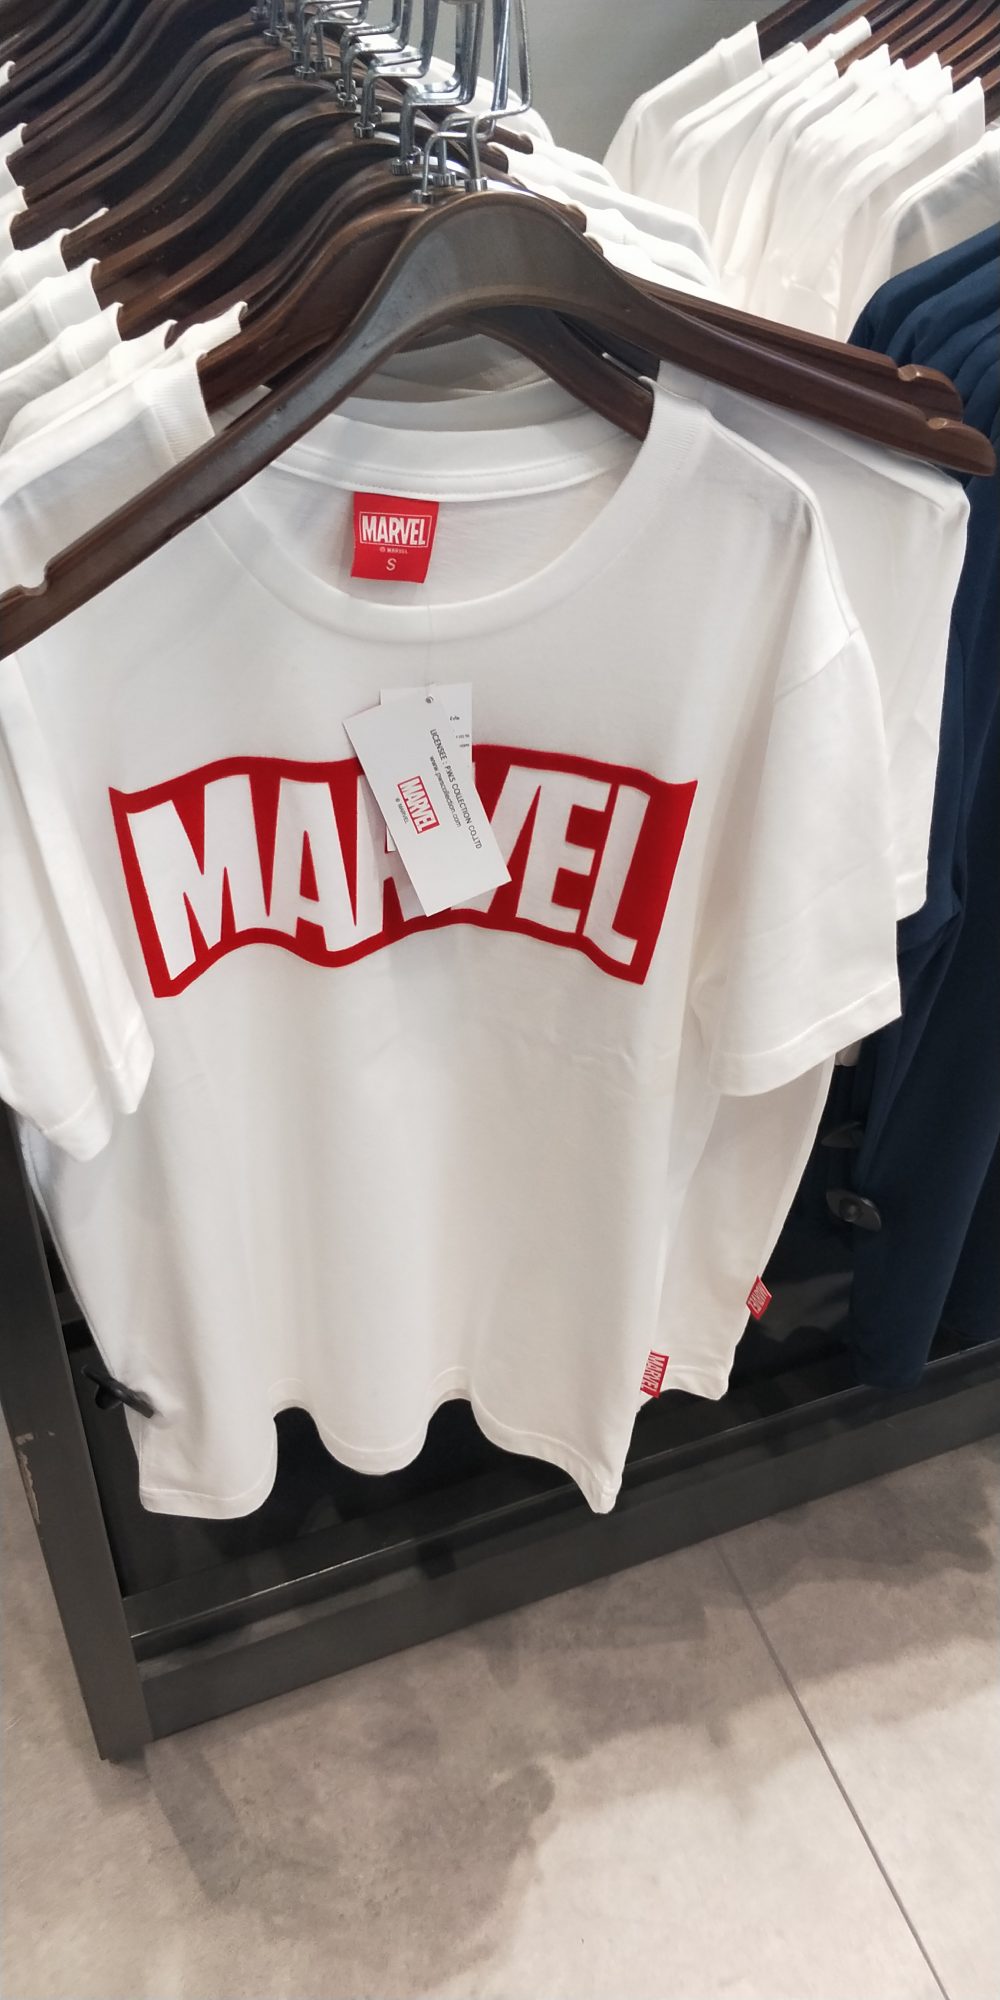 Marvel泰國漫威基地 主題周邊商品一覽 衣服周邊 - 無限手套 - 敗家達人推薦